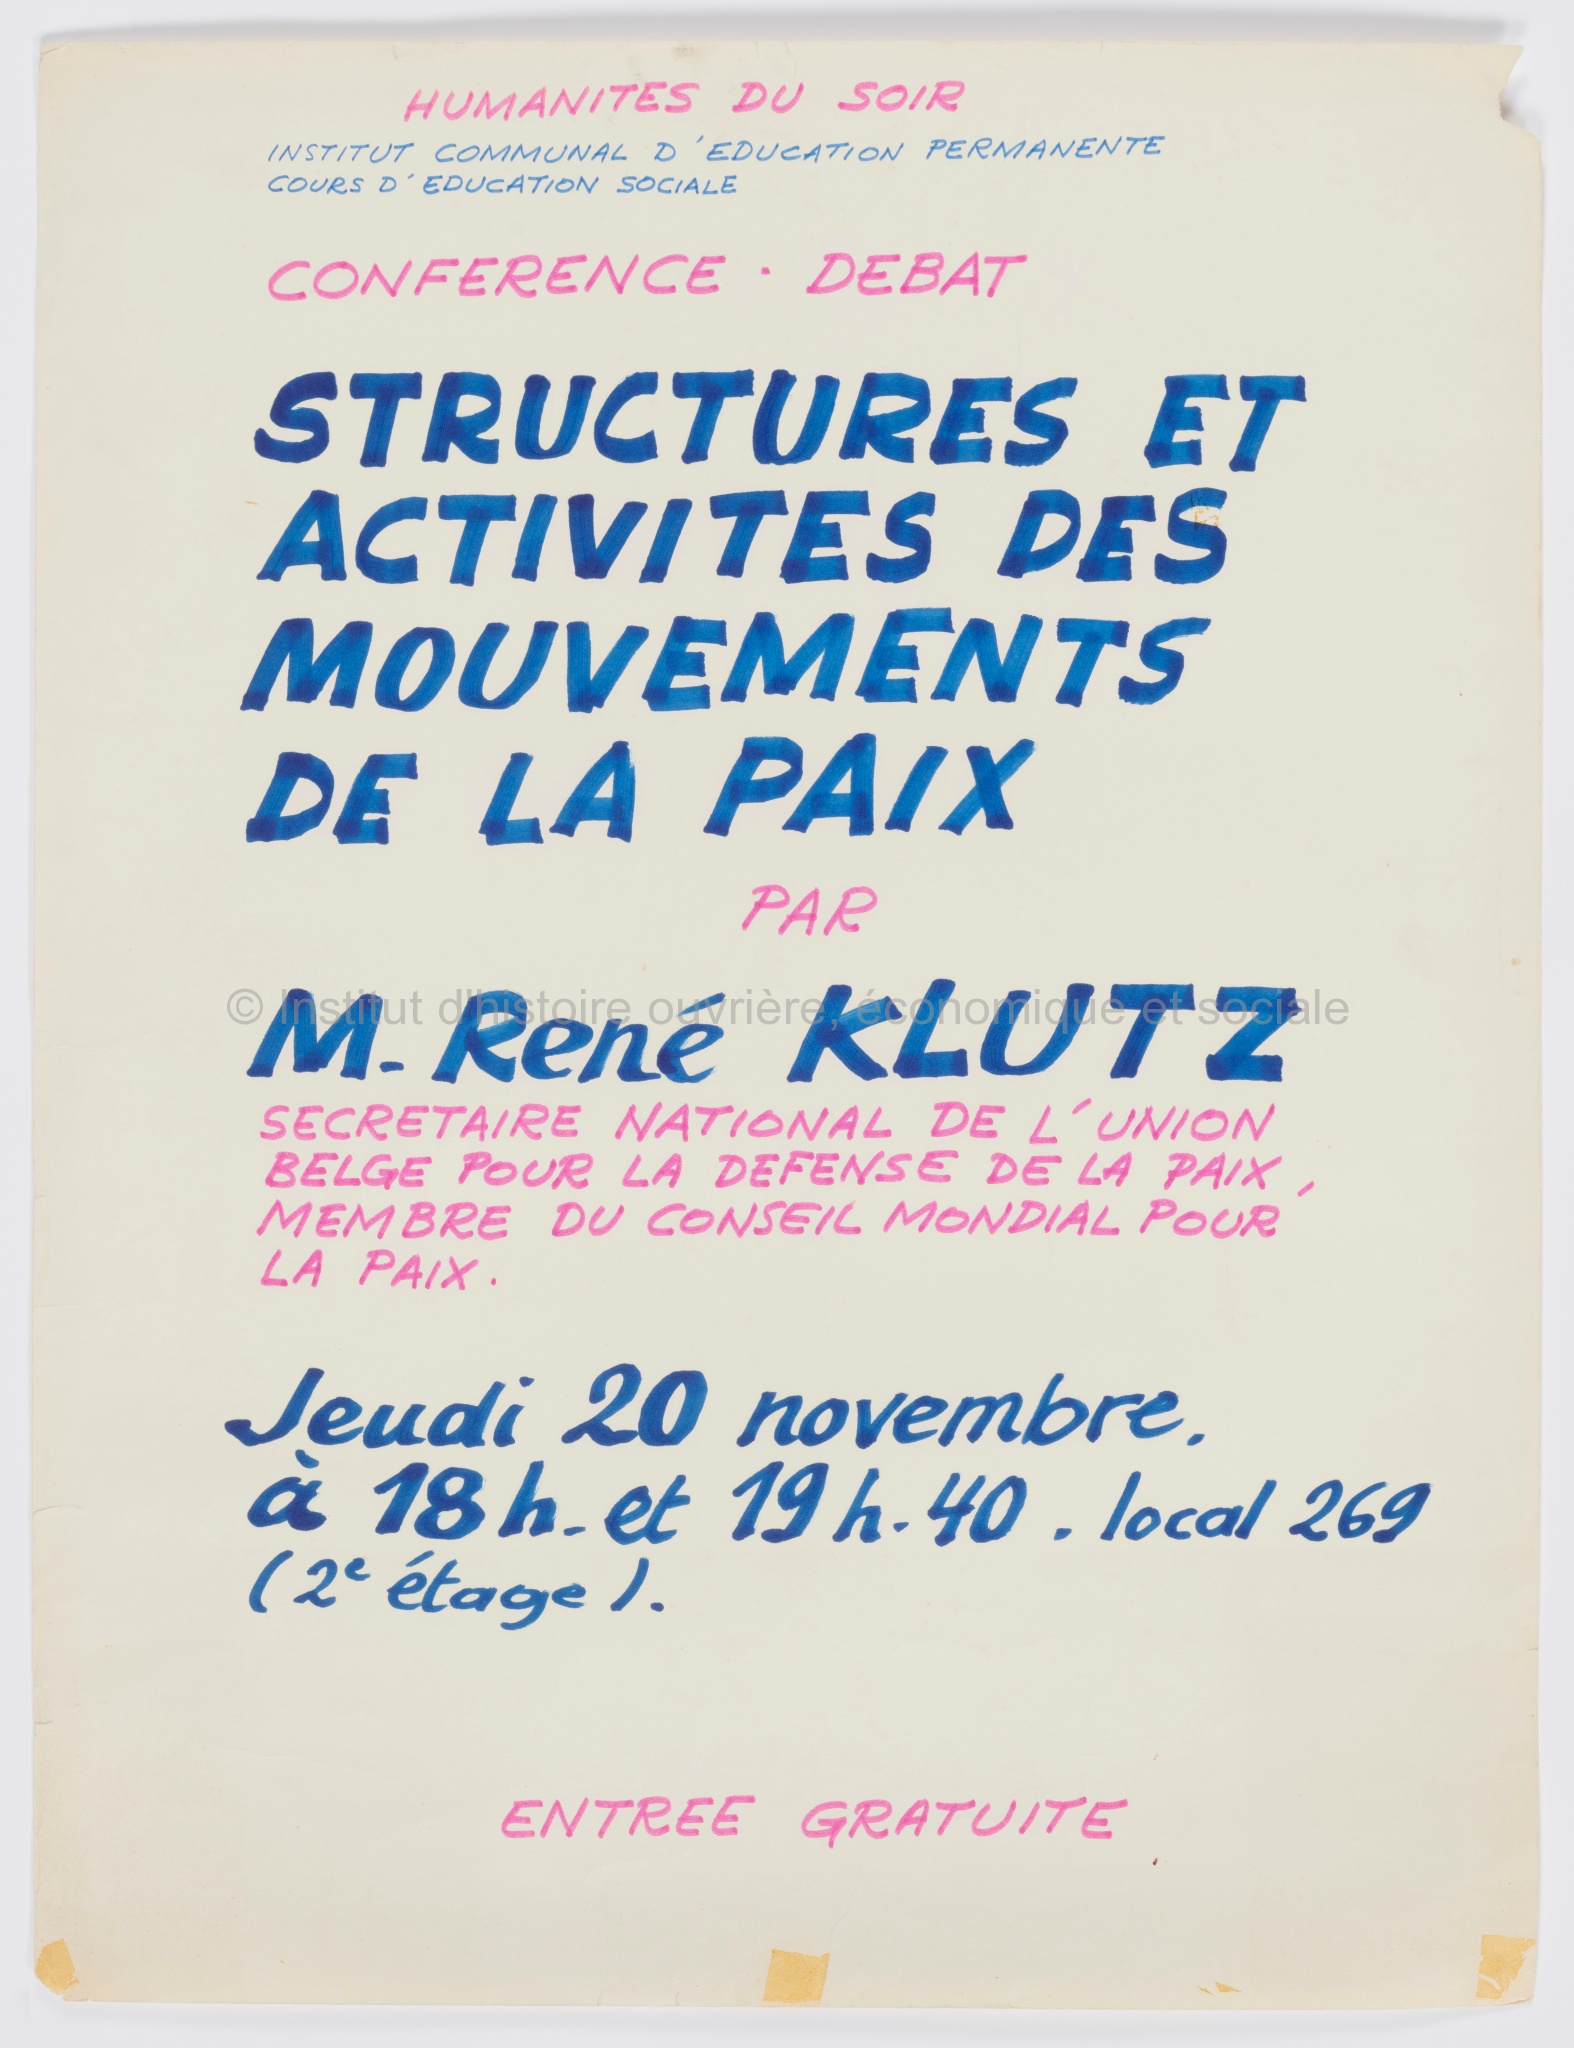 Conférence-débat, Structures et activités des mouvements de la paix par M. René Klutz : jeudi 20 novembre à 18h et 19h40